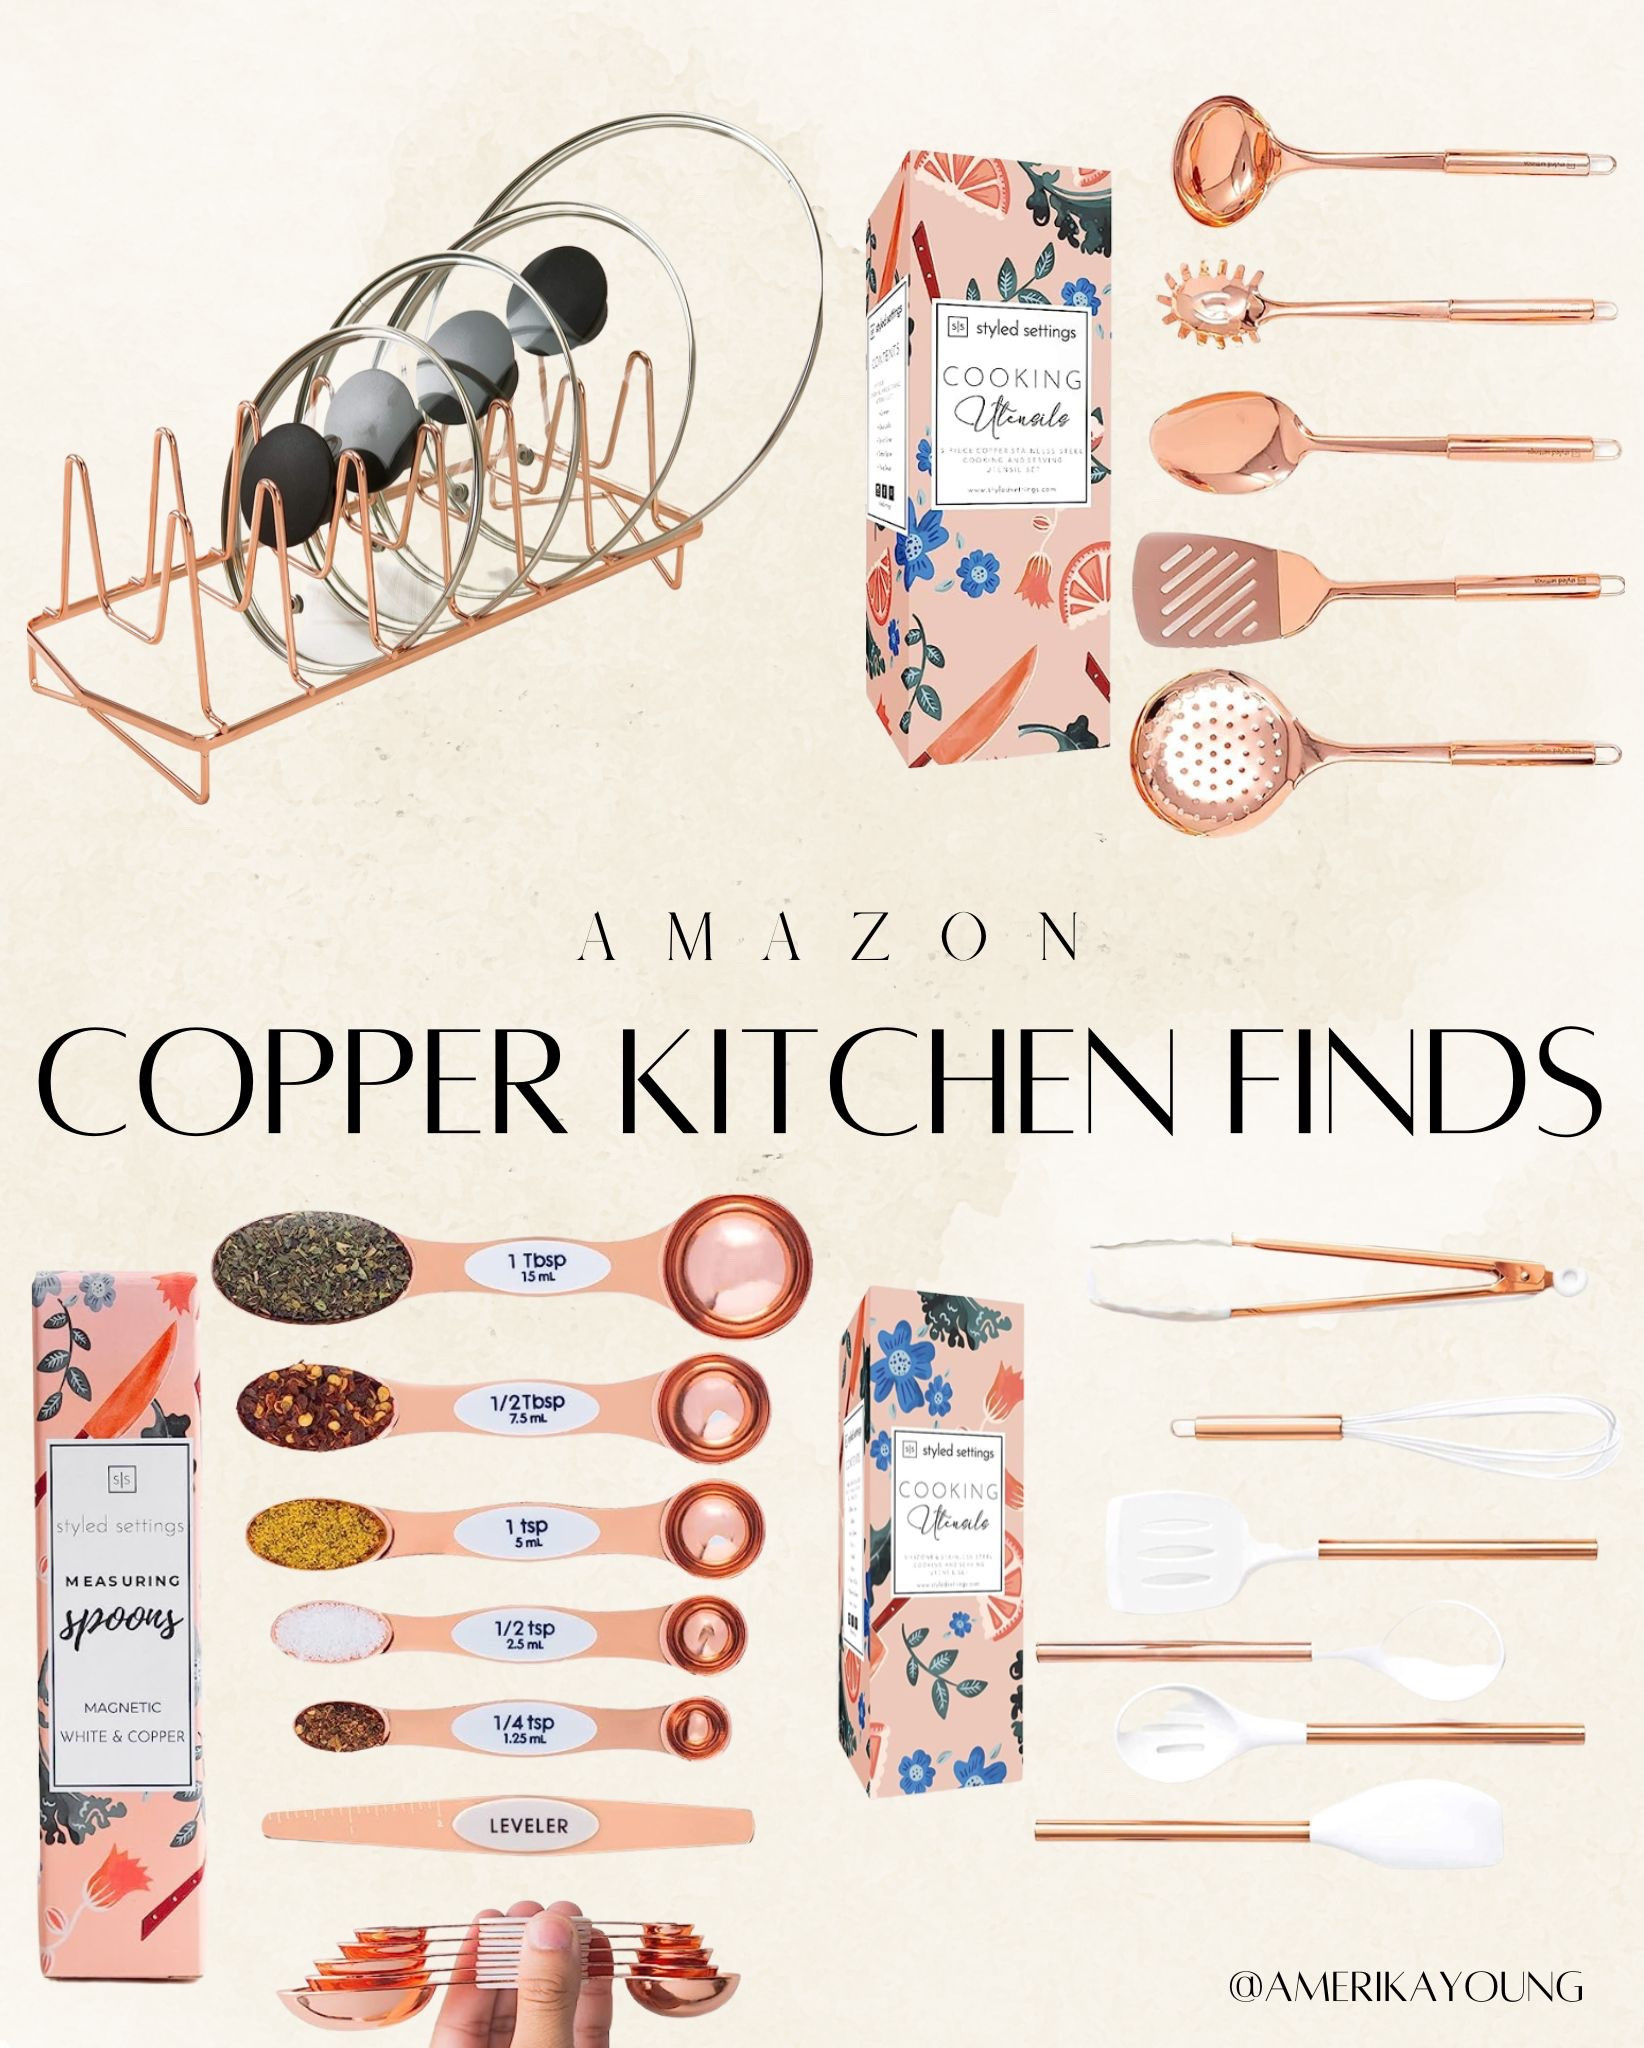 Kitchen Finds  Gold kitchen accessories,  kitchen gadgets,  Rose gold kitchen